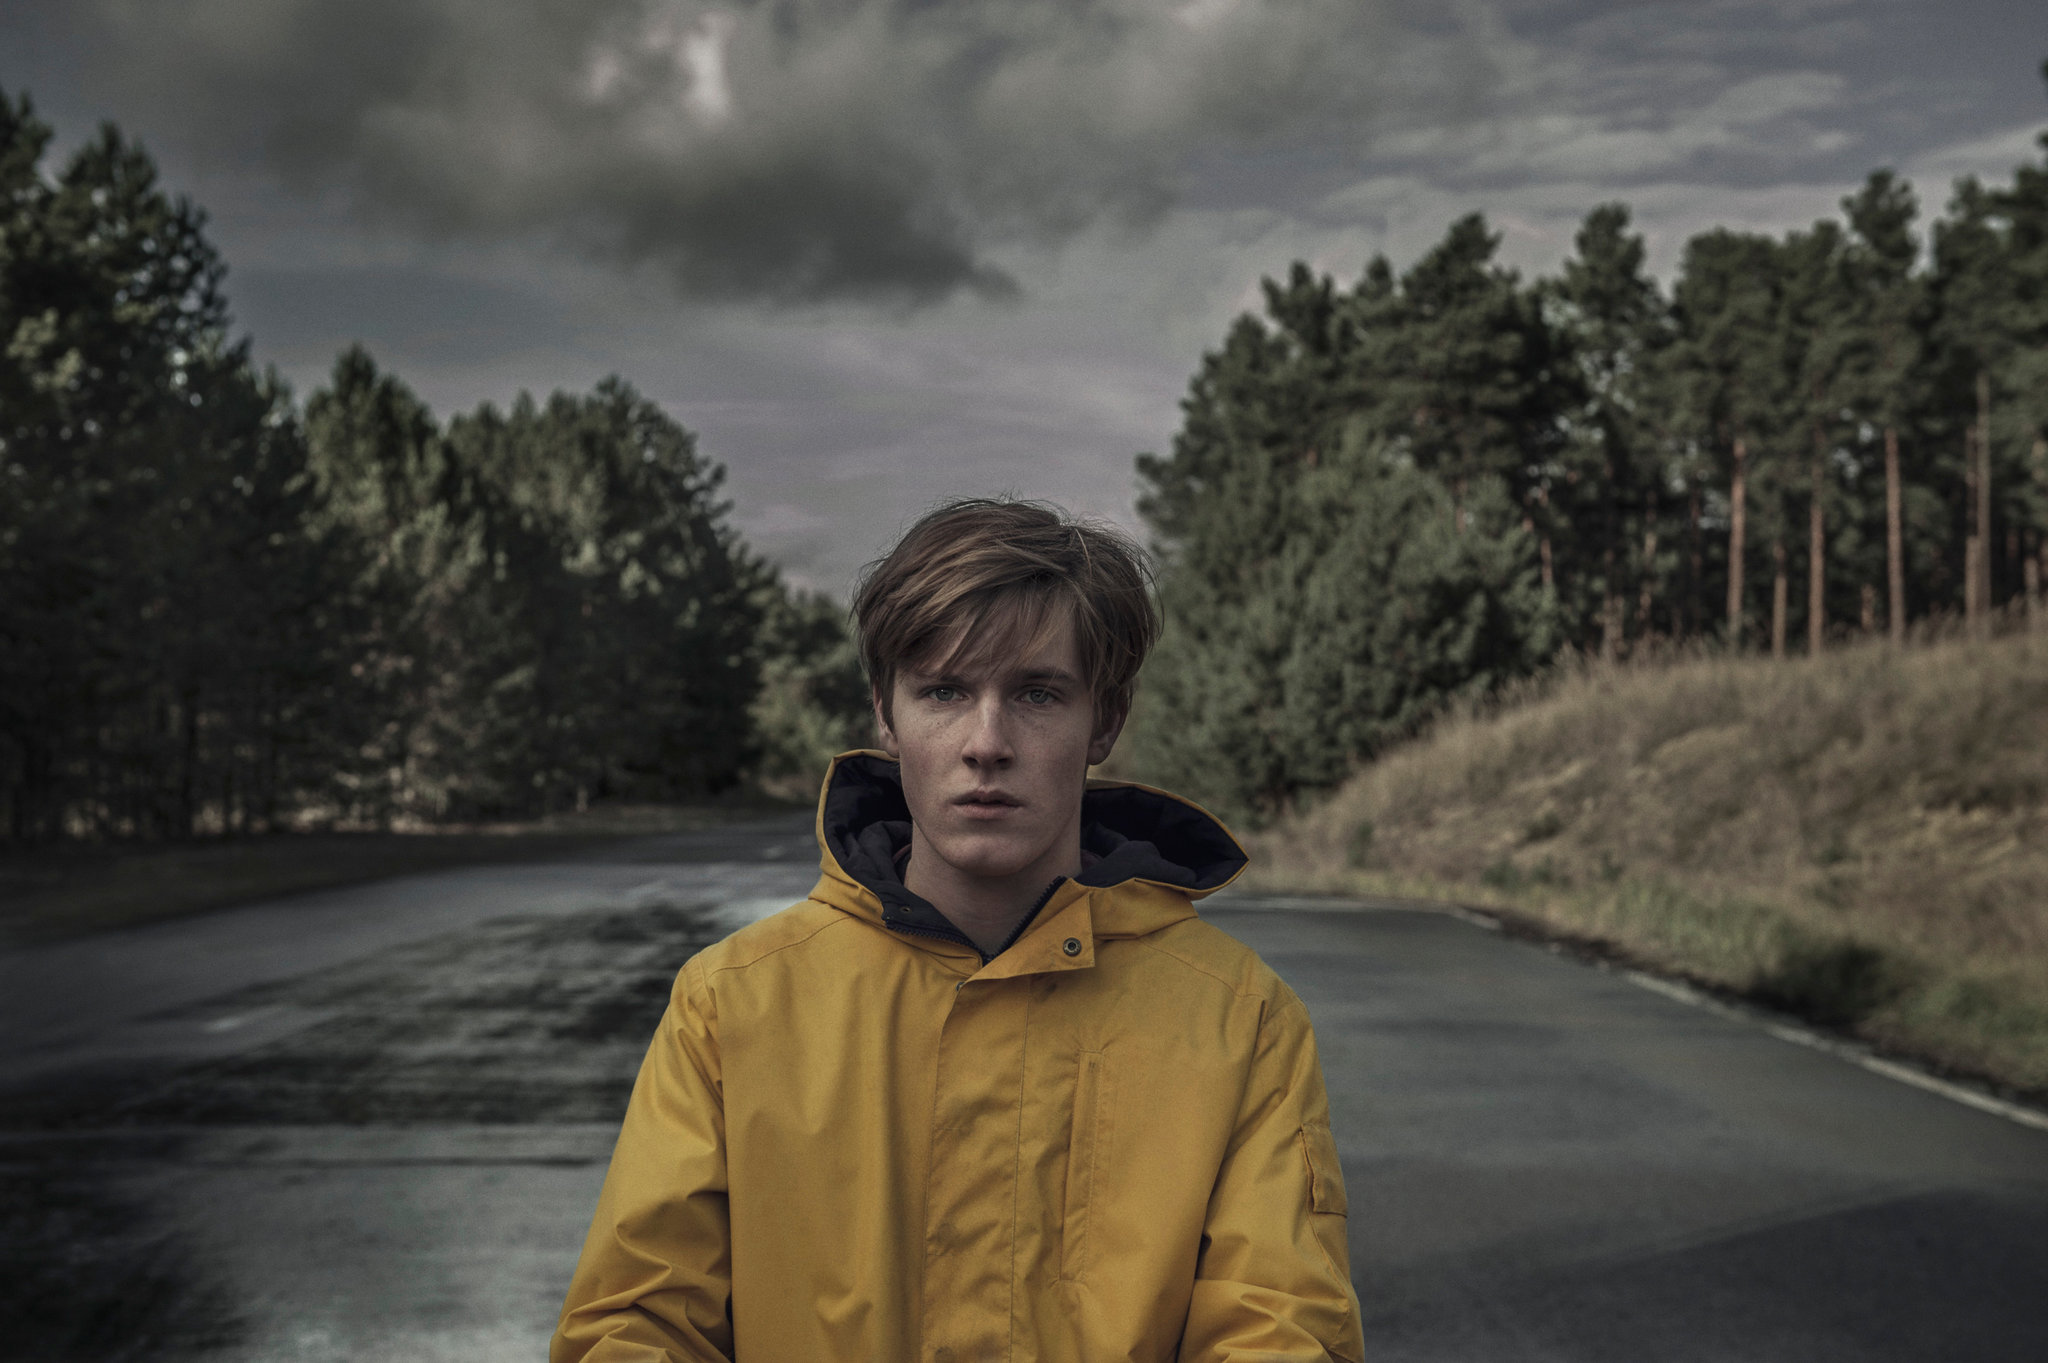 Jonas in the town of Winden, in his yellow rain-coat.